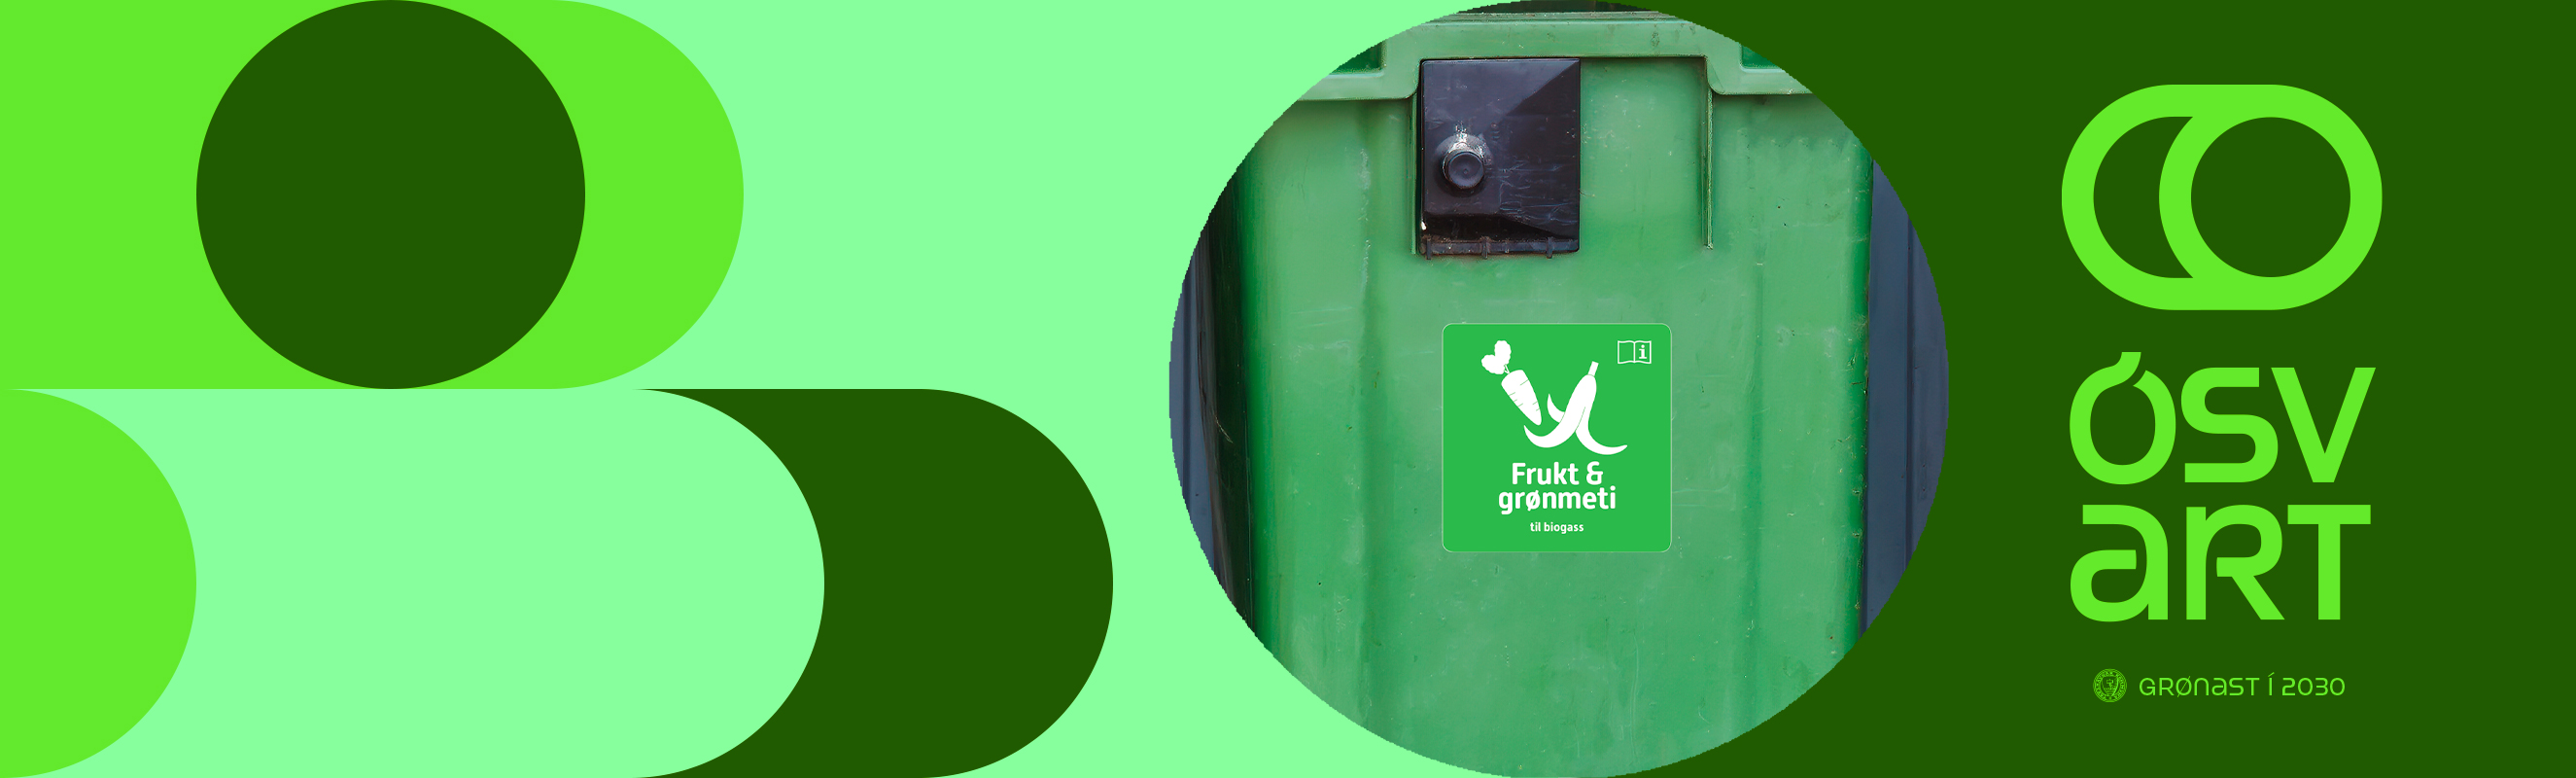 Frukt og grønmeti til biogass